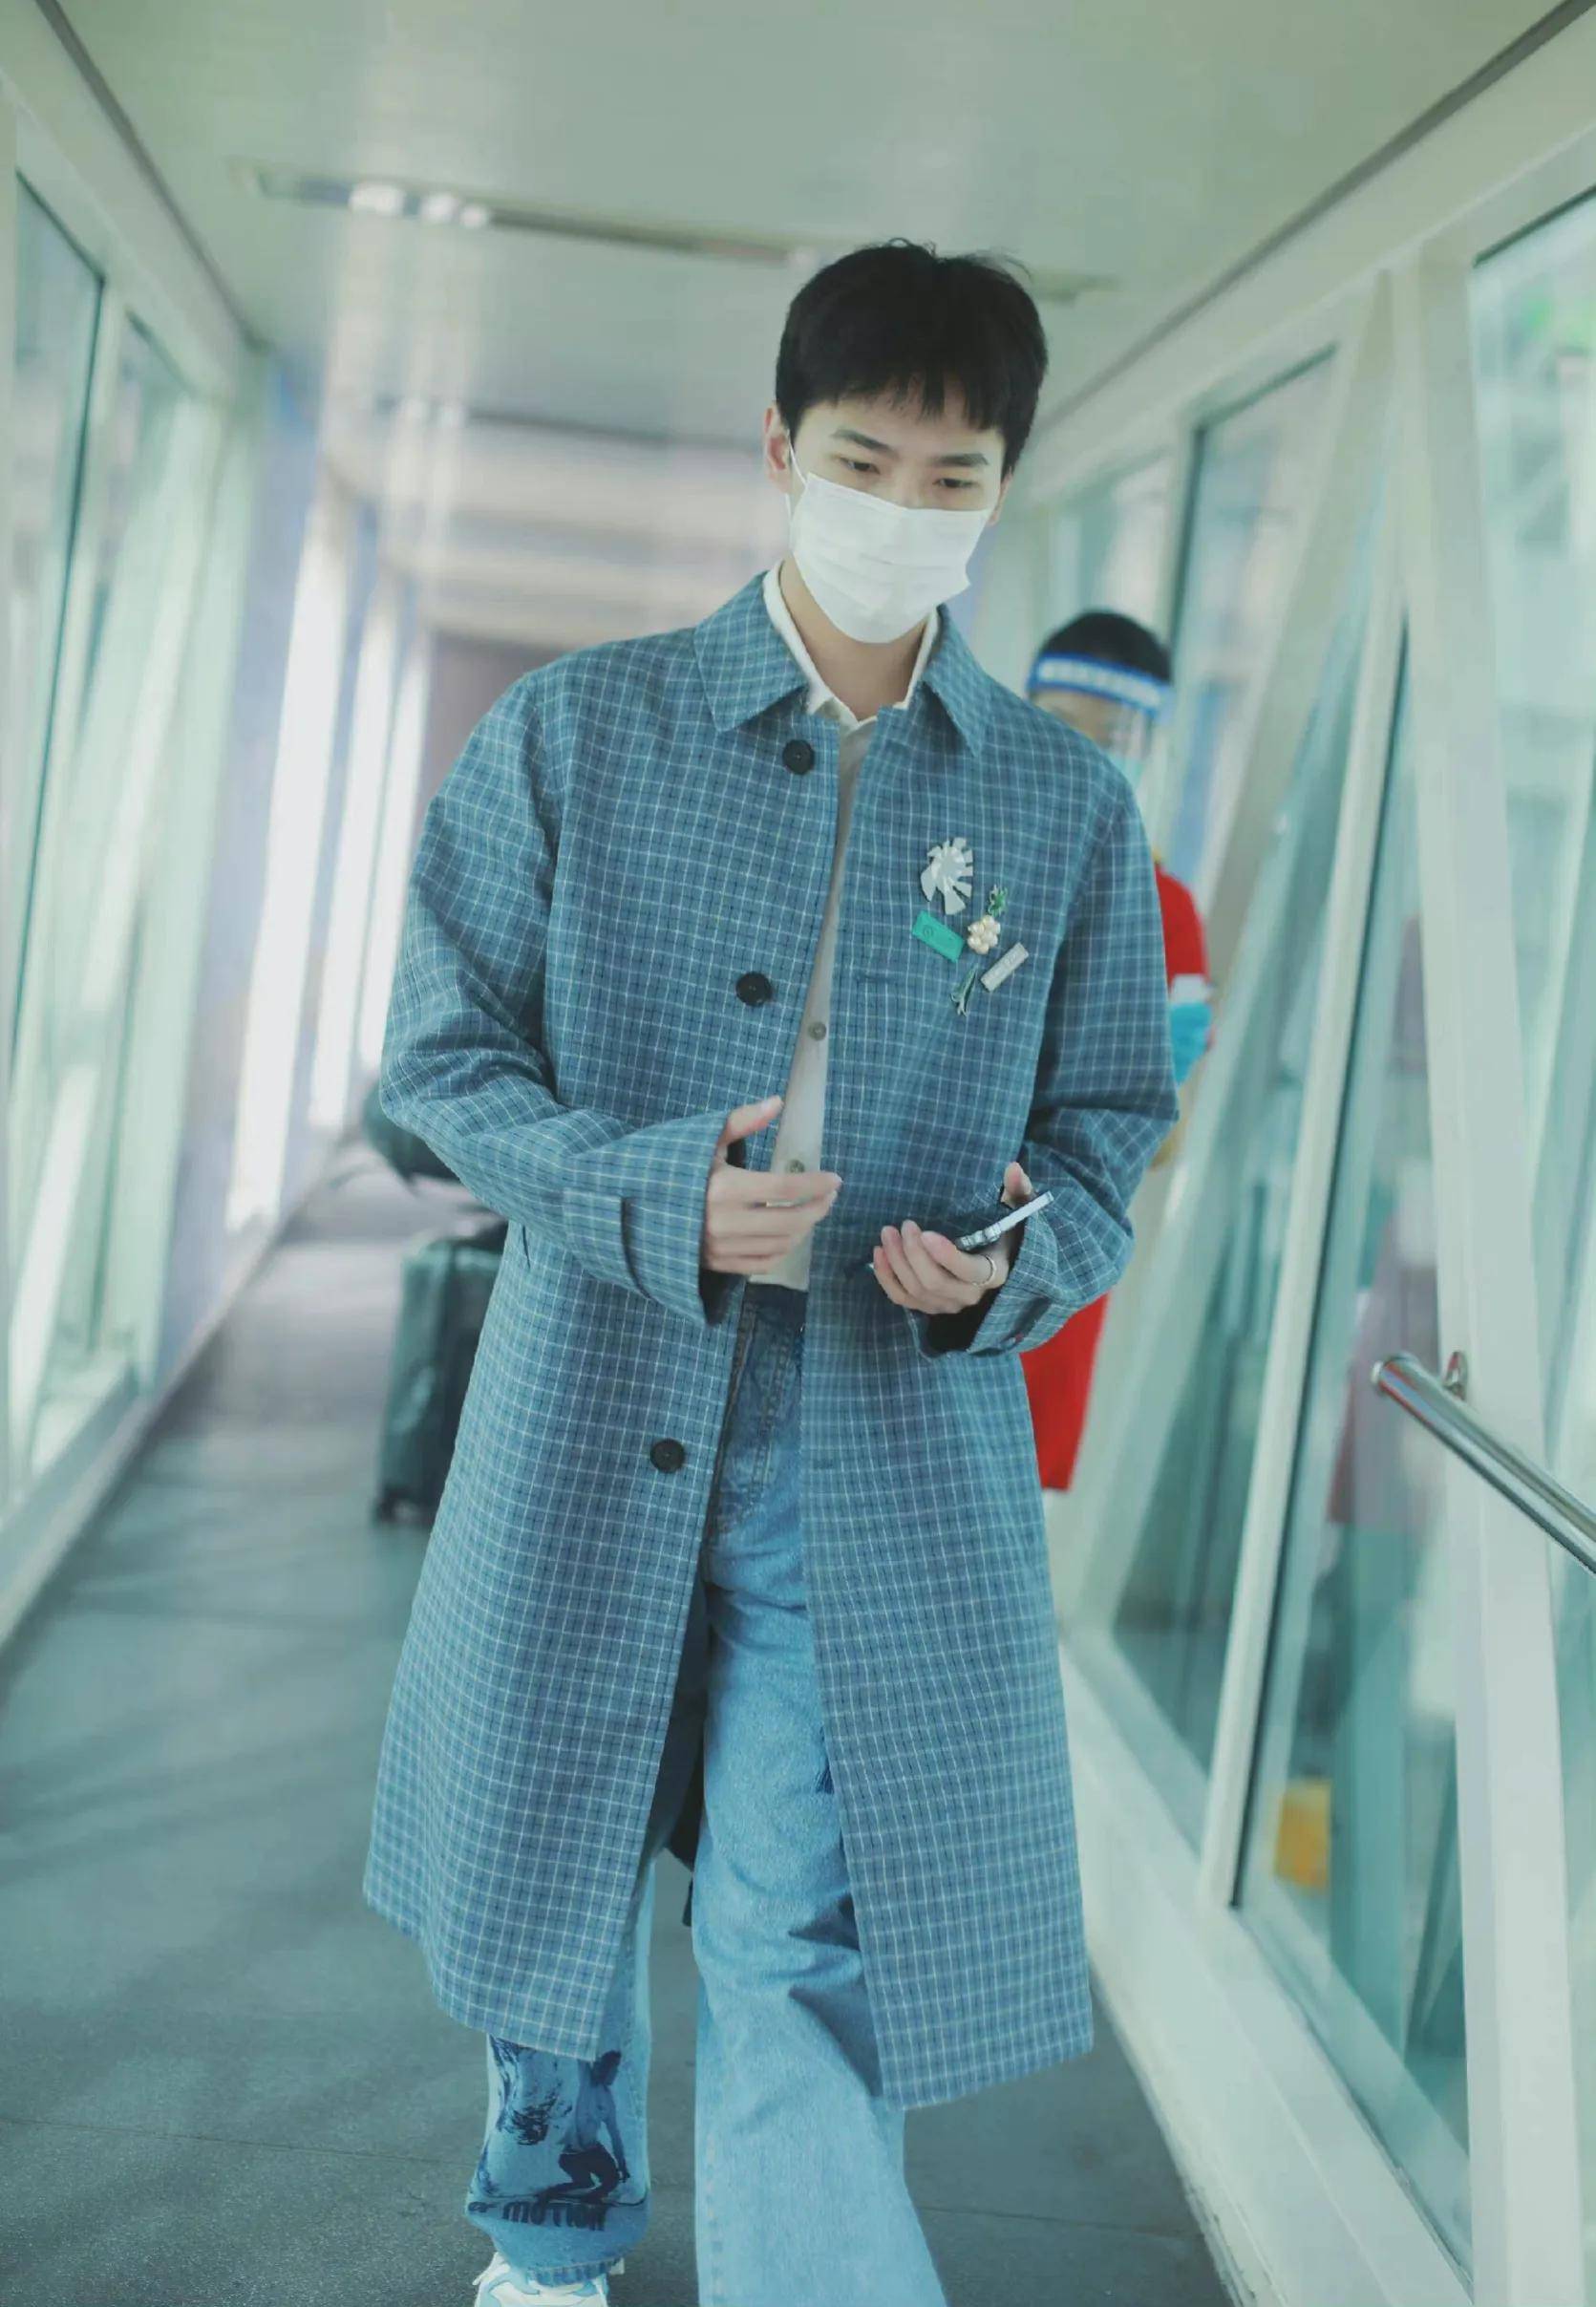 杨洋机场私服身穿蓝色格纹大衣印花牛仔裤清冷自持优雅高级